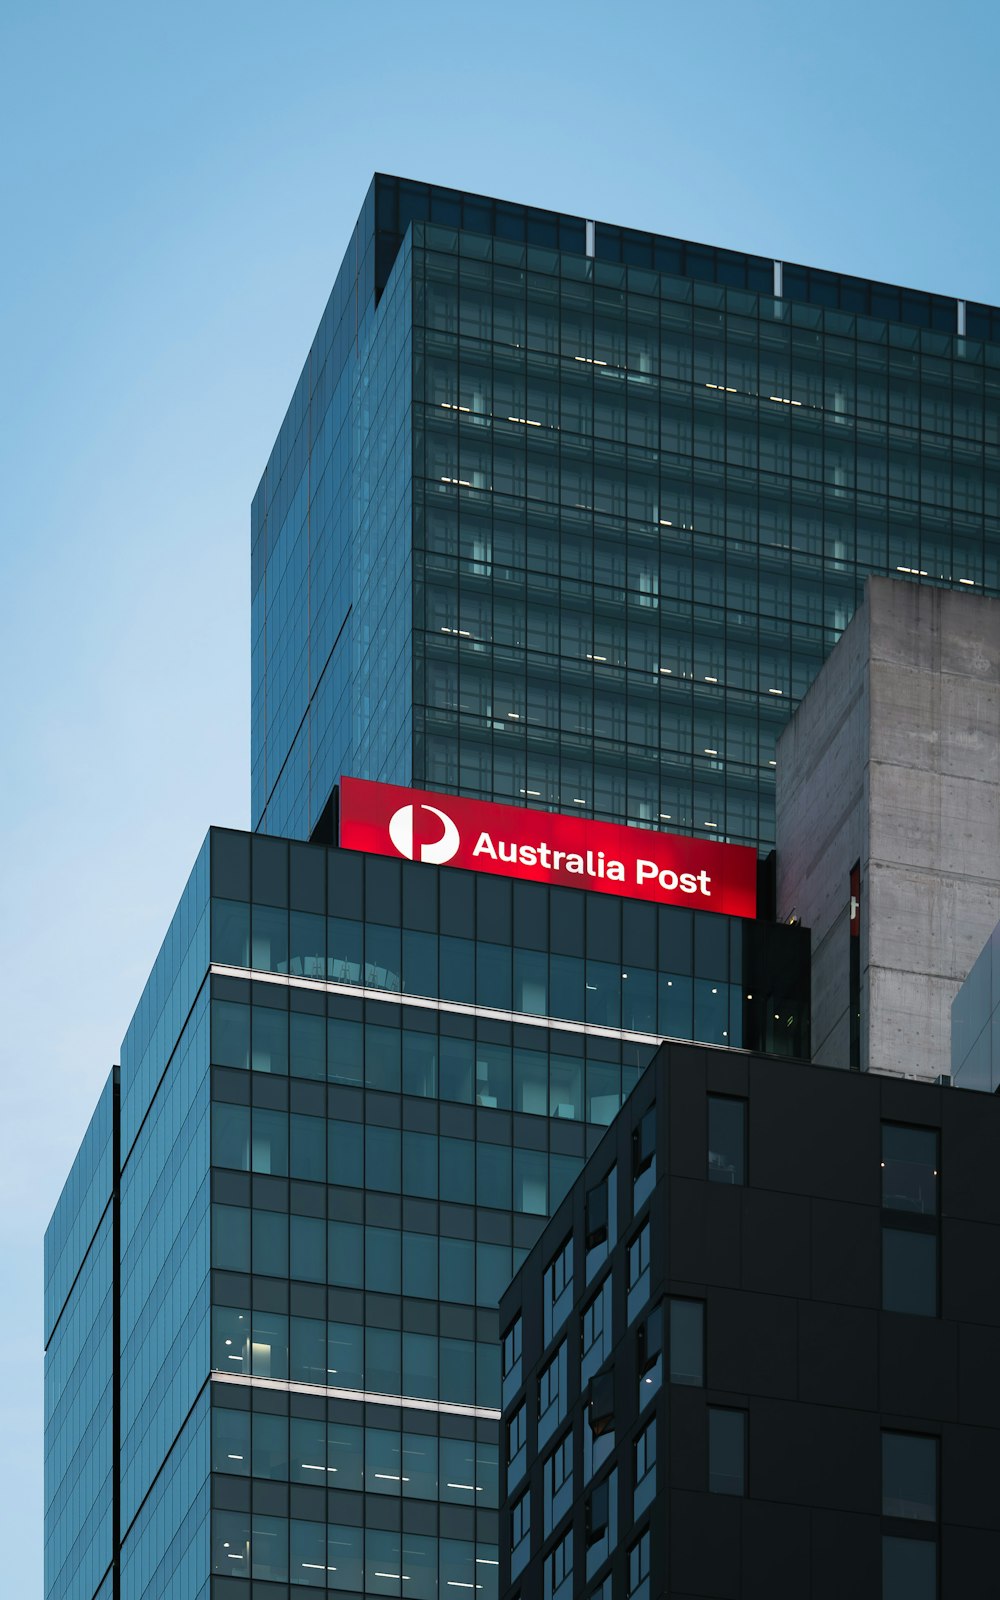 높은 건물 꼭대기에 있는 빨간색 호주 우체국 표지판